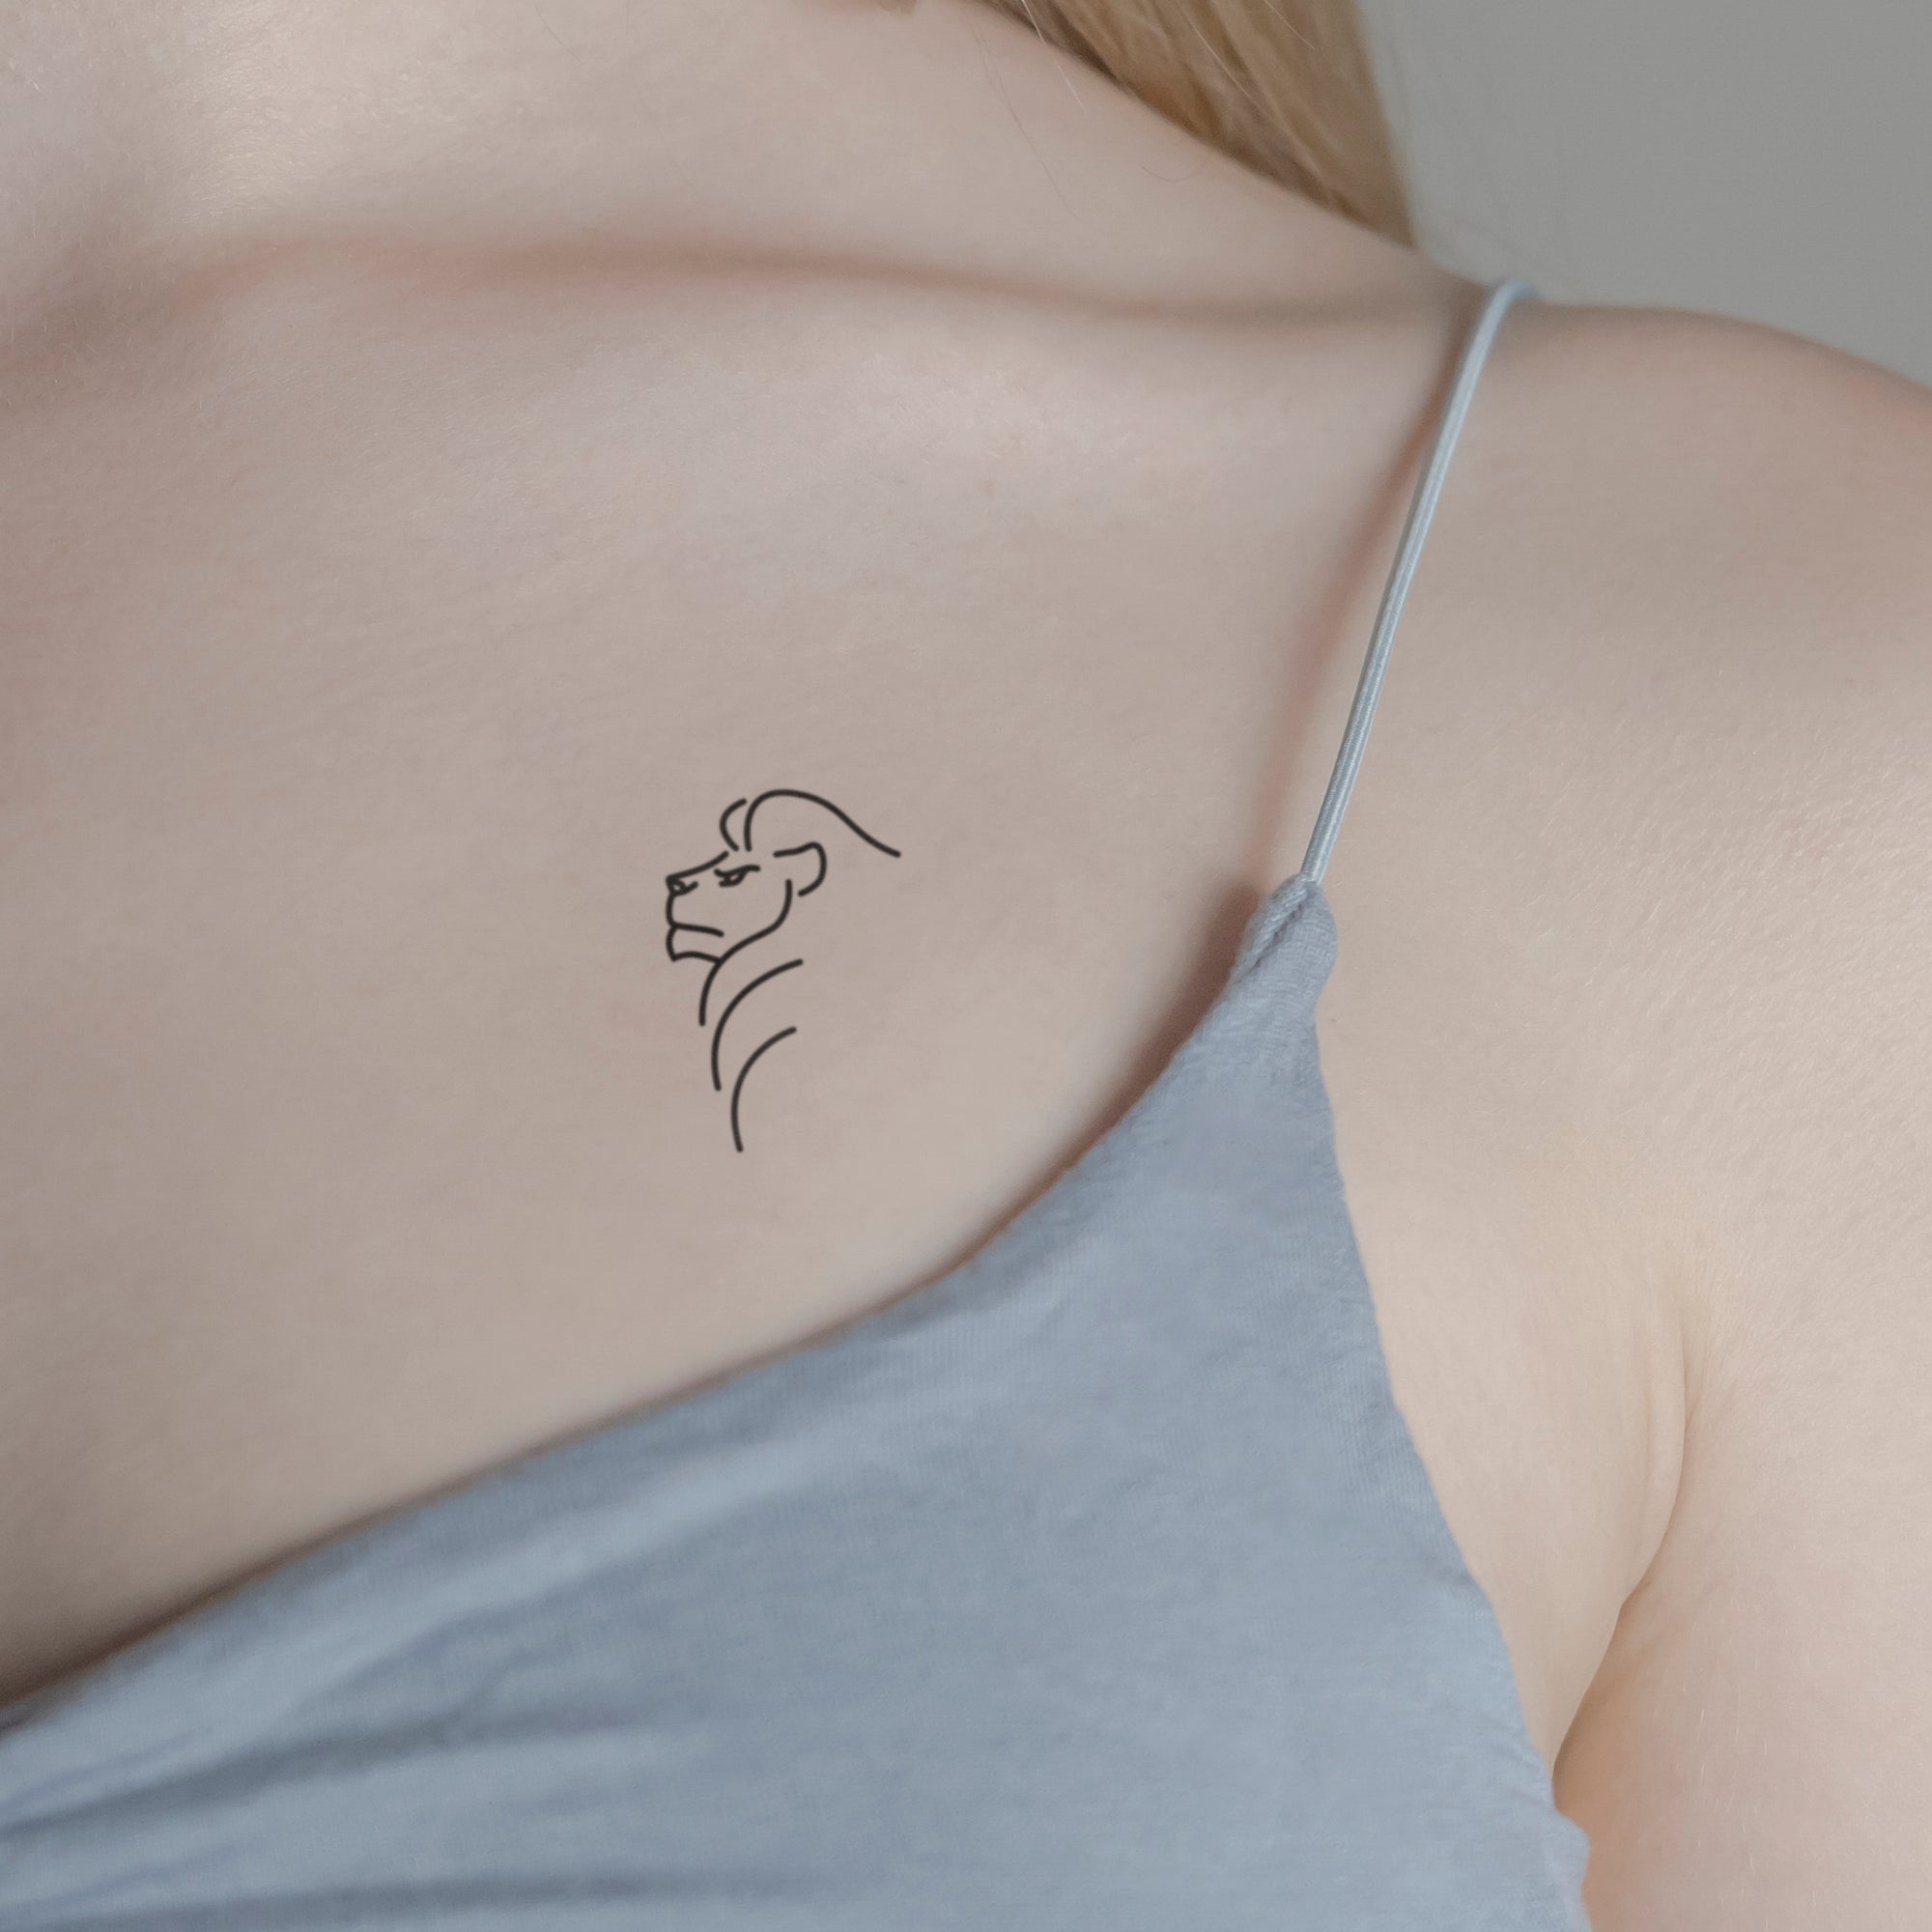 Löwenkopf Tattoo von minink, der Marke für temporäre Tattoos.